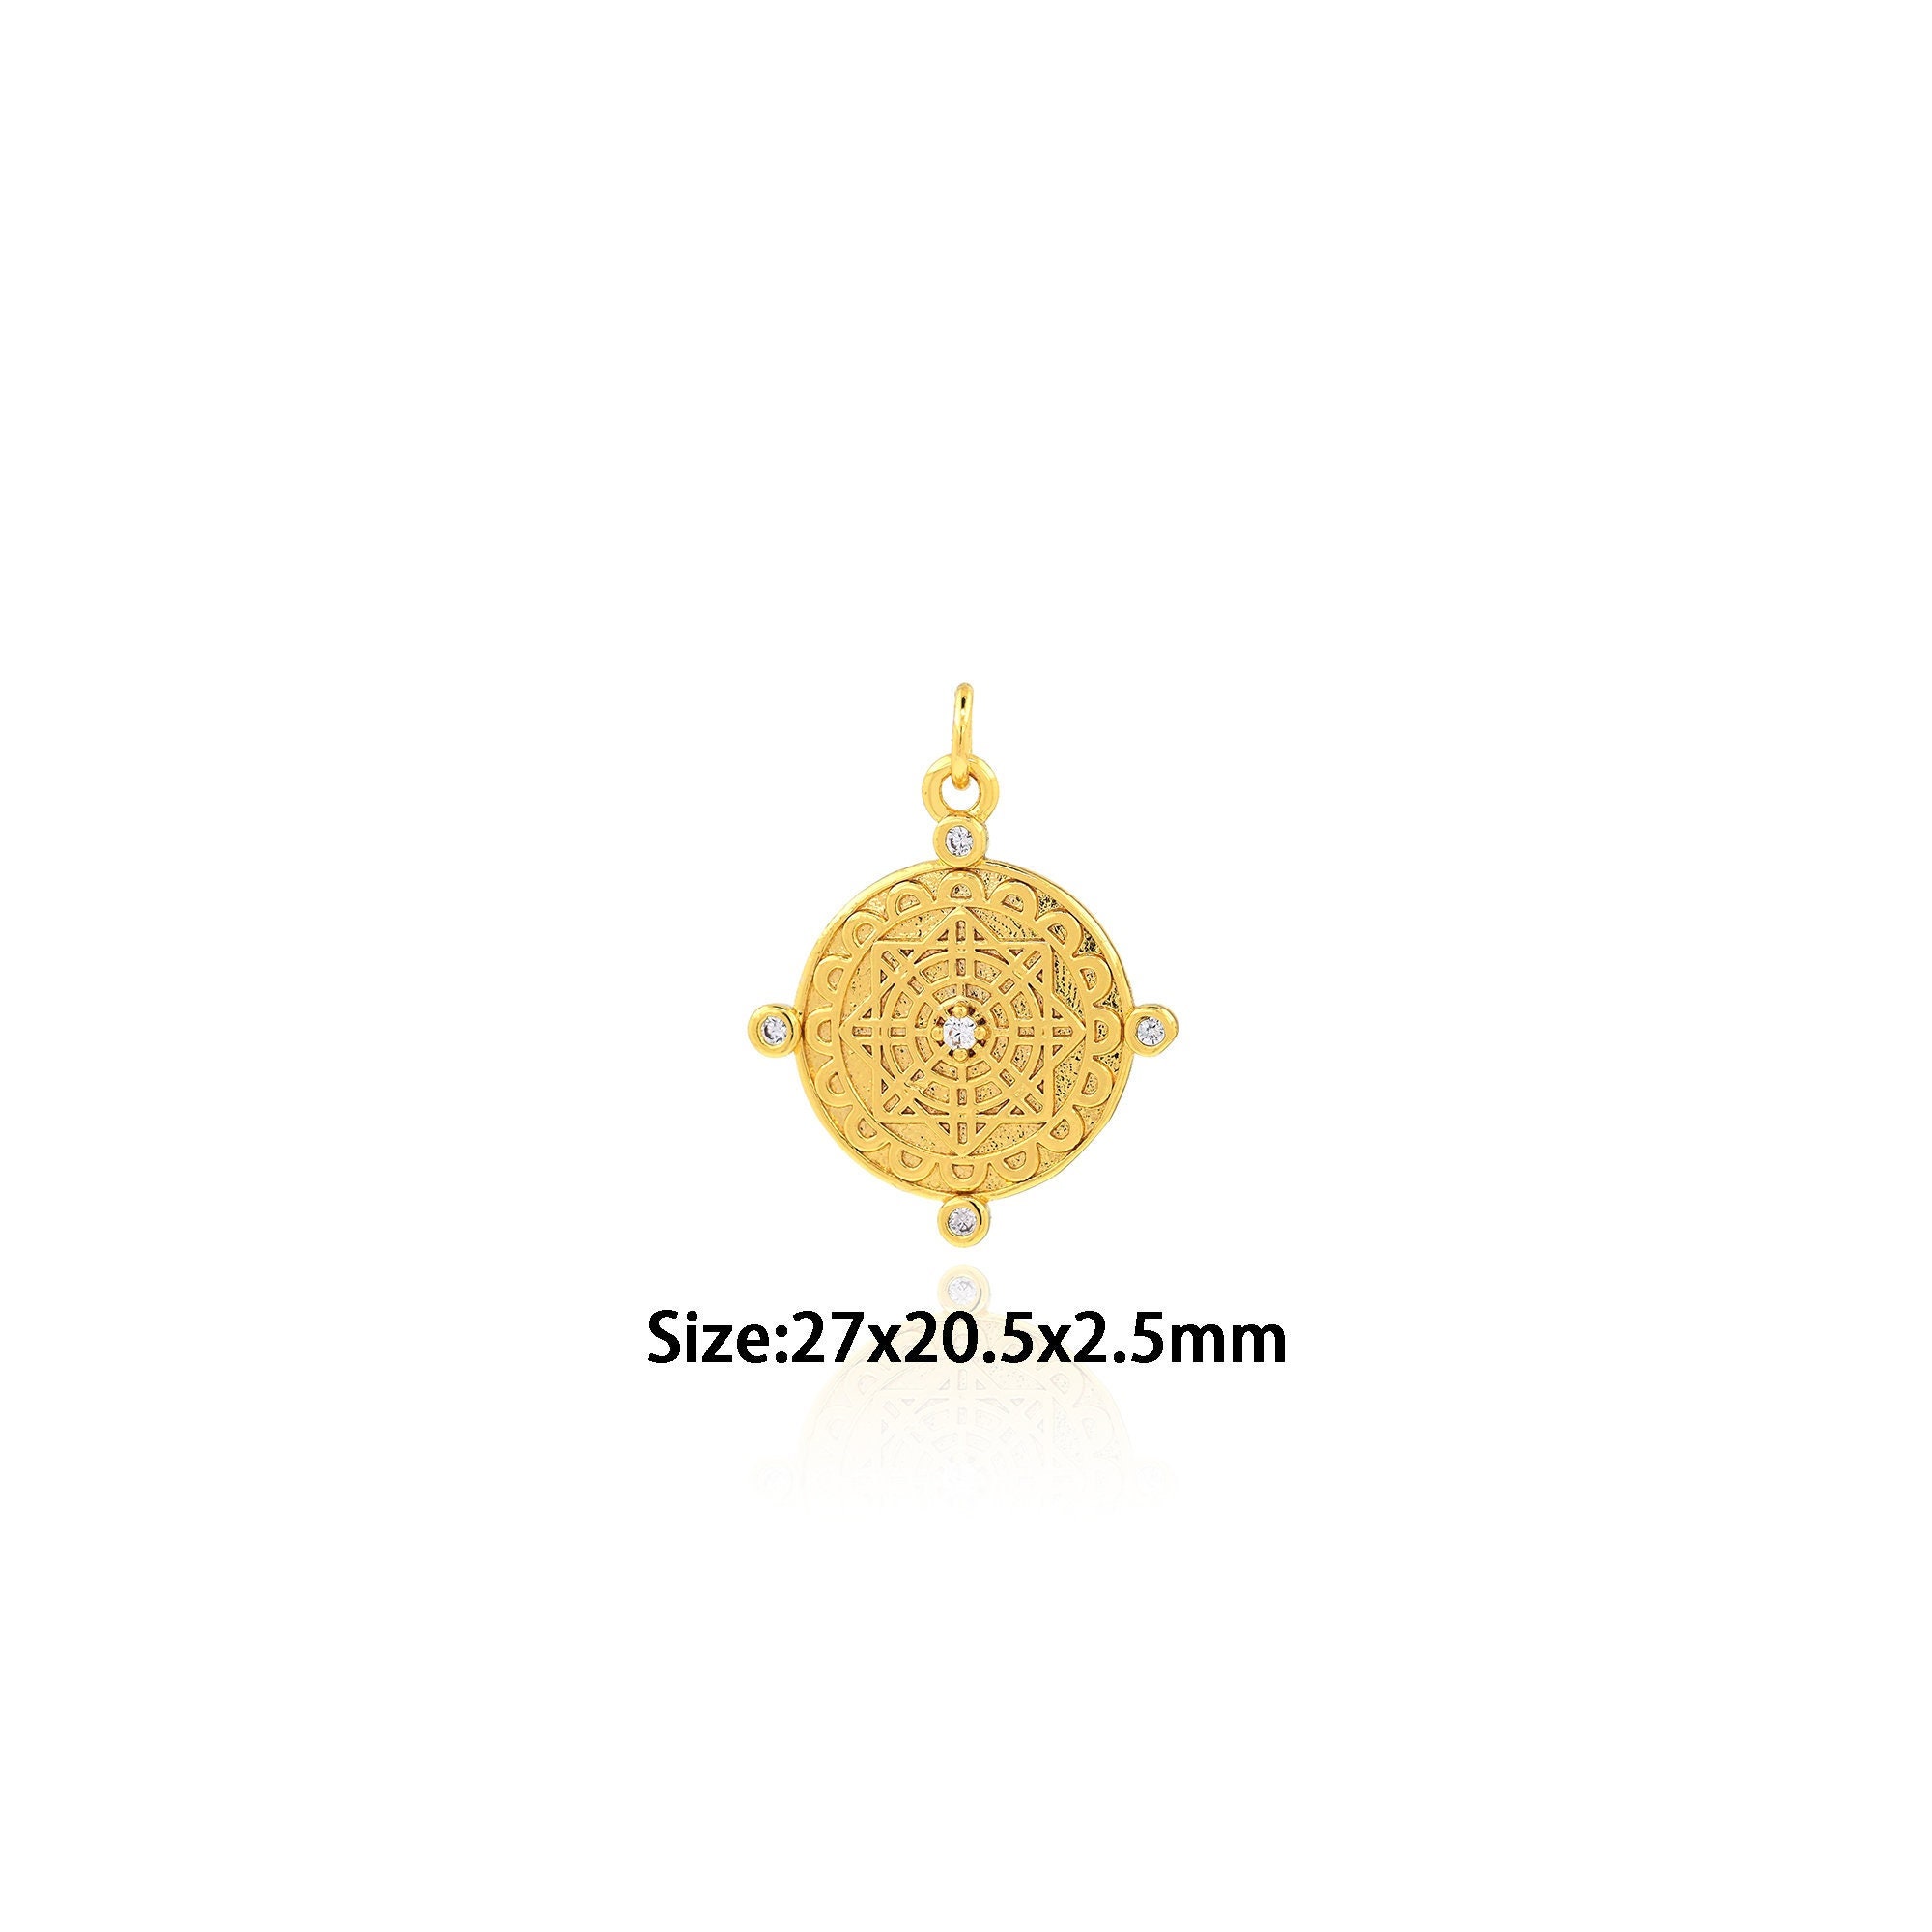 空姐kim代购- ♡LV Iconic Necklace项链♡ Rm1890 ❗26/9/2022❗close